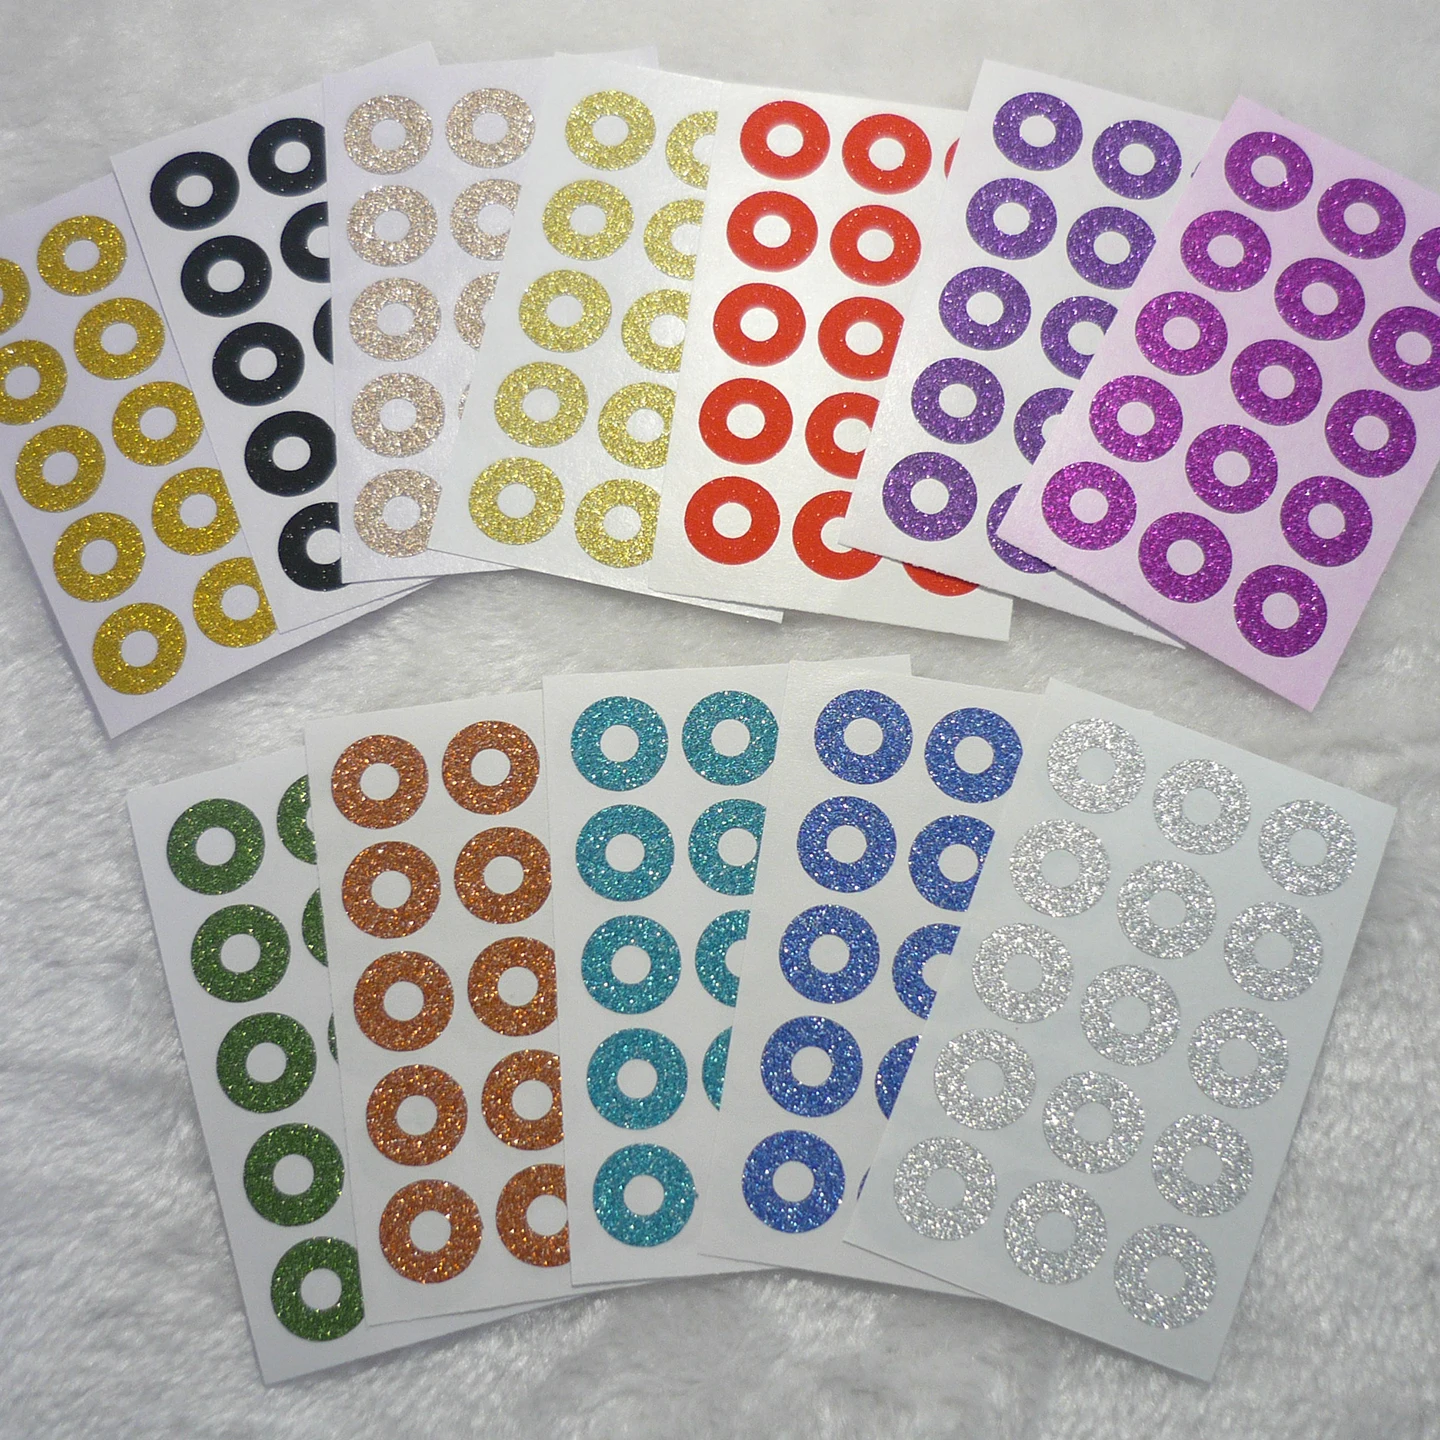 Color Mezclado 28 Hojas 22.2x12.5 cm 13328 Puntos NBEADS Etiquetas Adhesivas Redondas pequeñas de 6 mm Etiquetas Autoadhesivas para Etiquetas Adhesivas